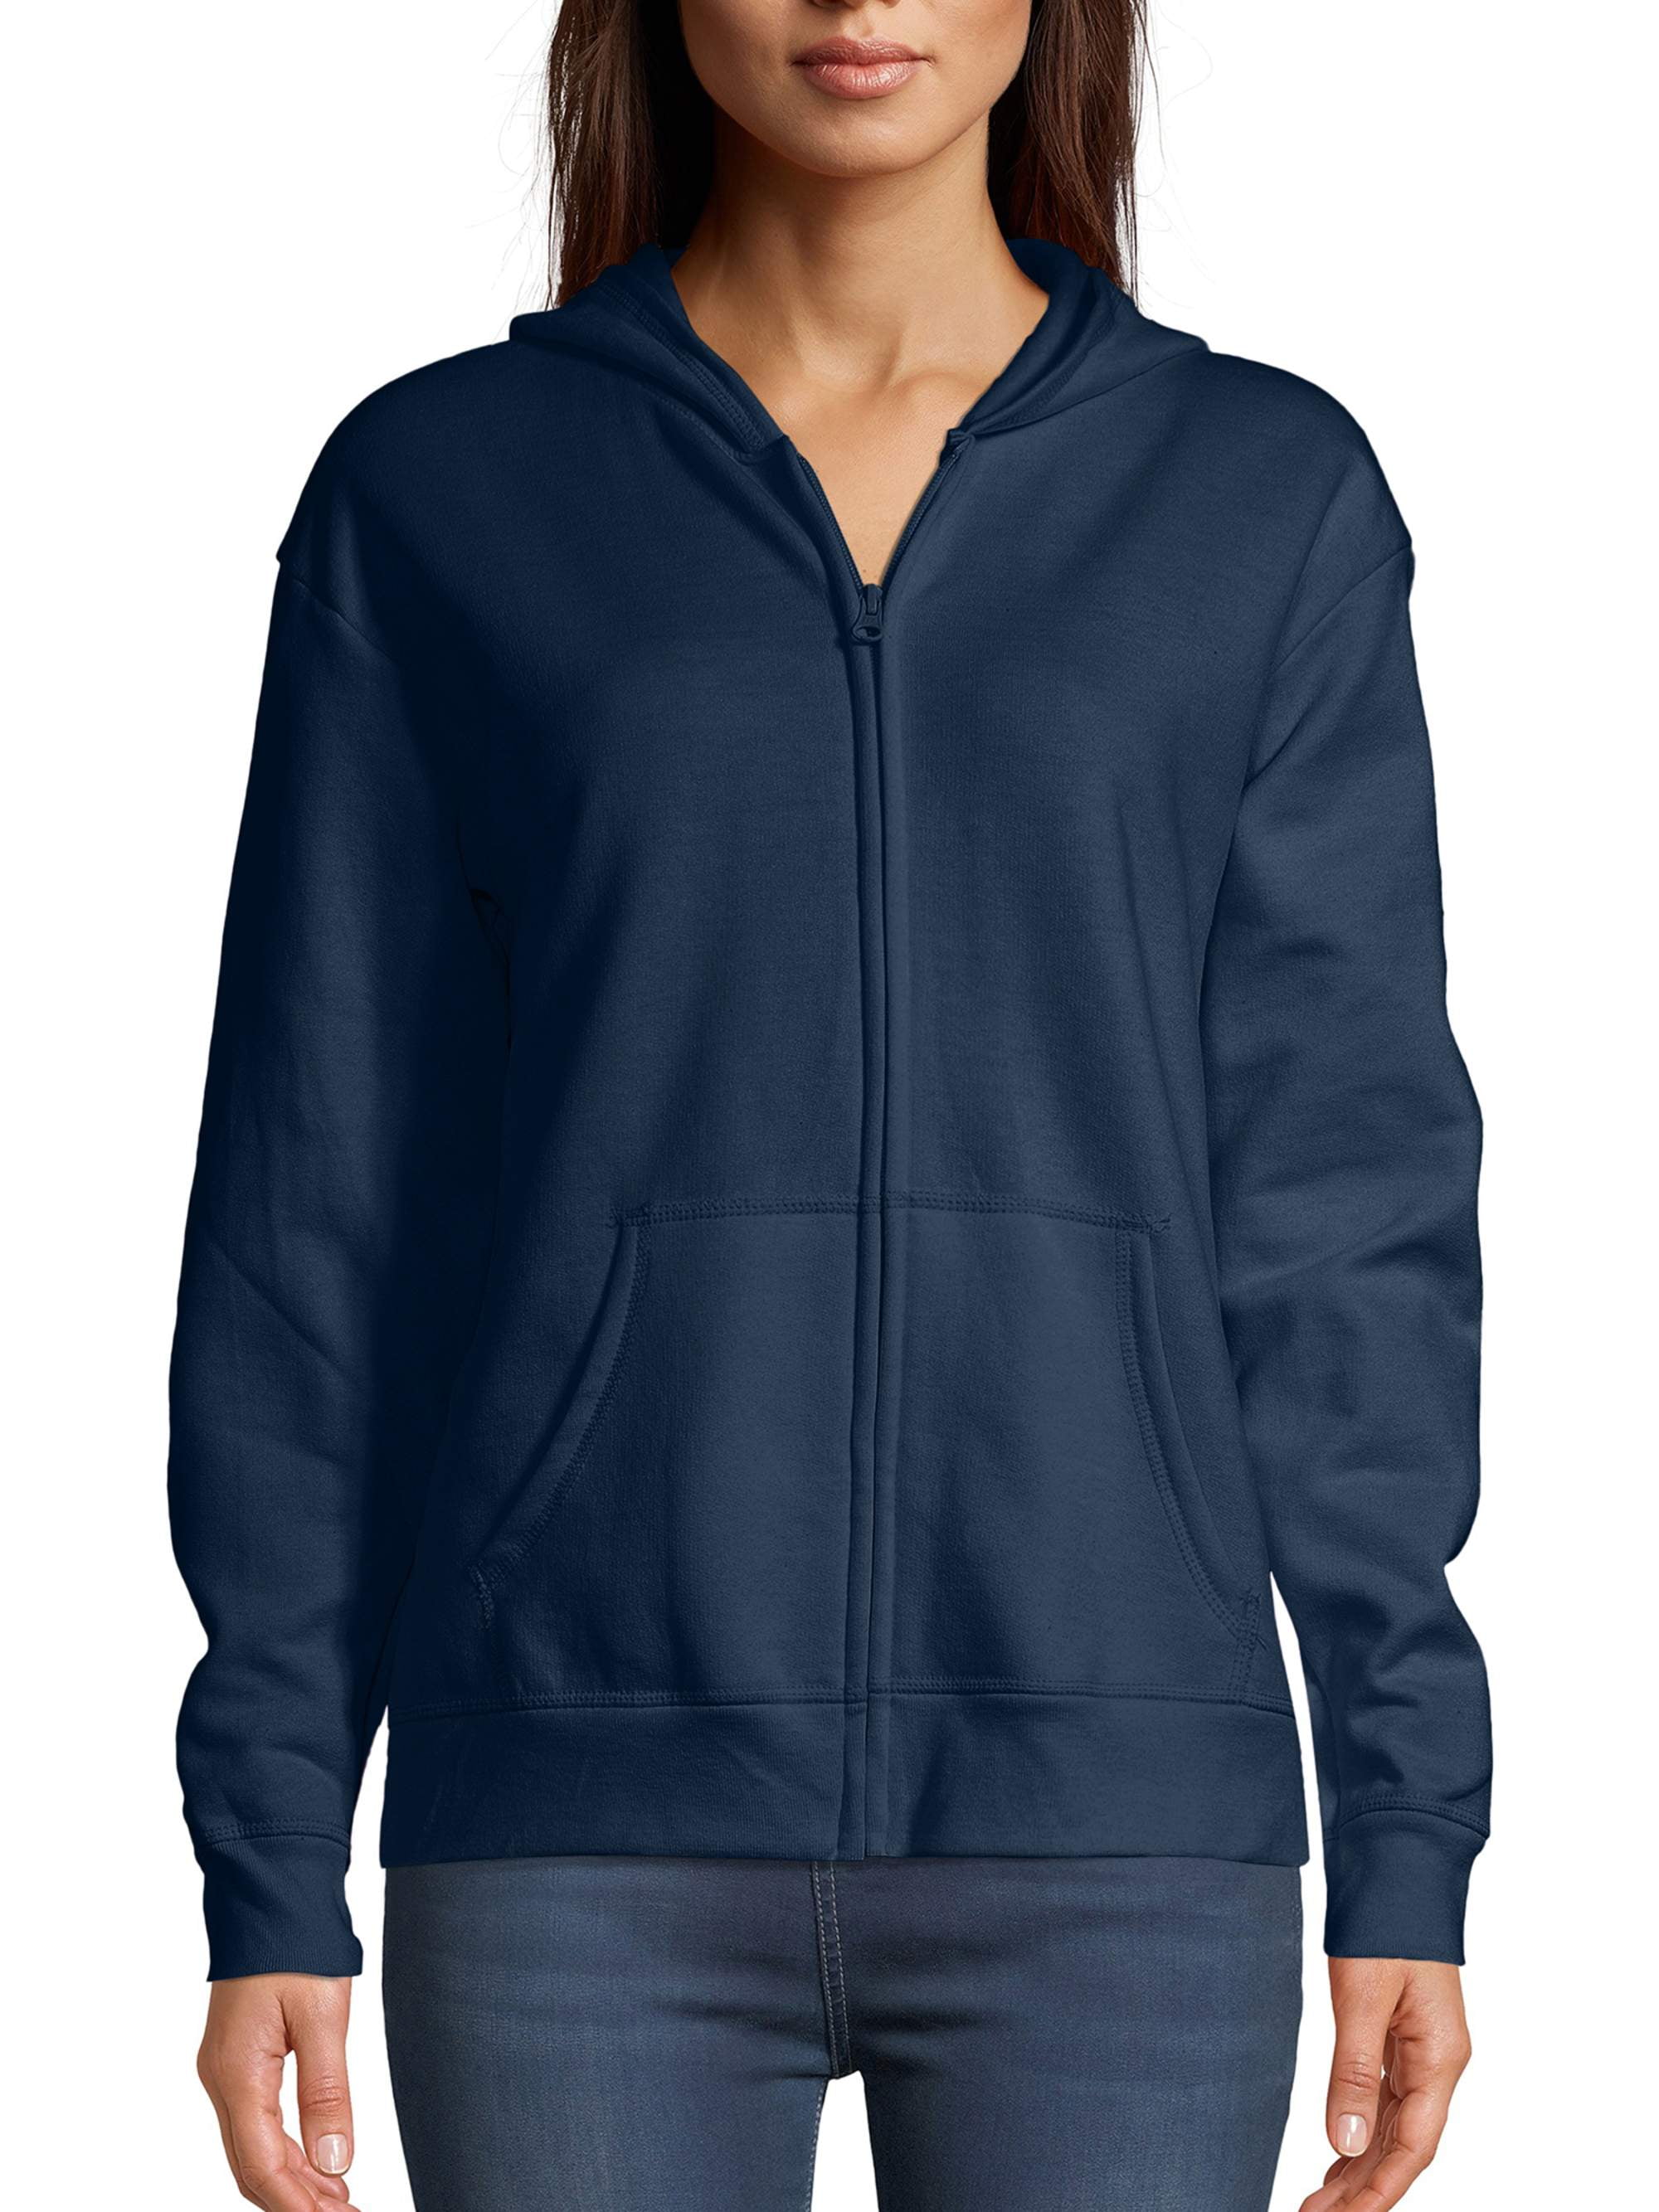 Details about   Hanes Hoodie Sweatshirt Comfortblend EcoSmart Full-Zip Kids Long Sleeve Hooded